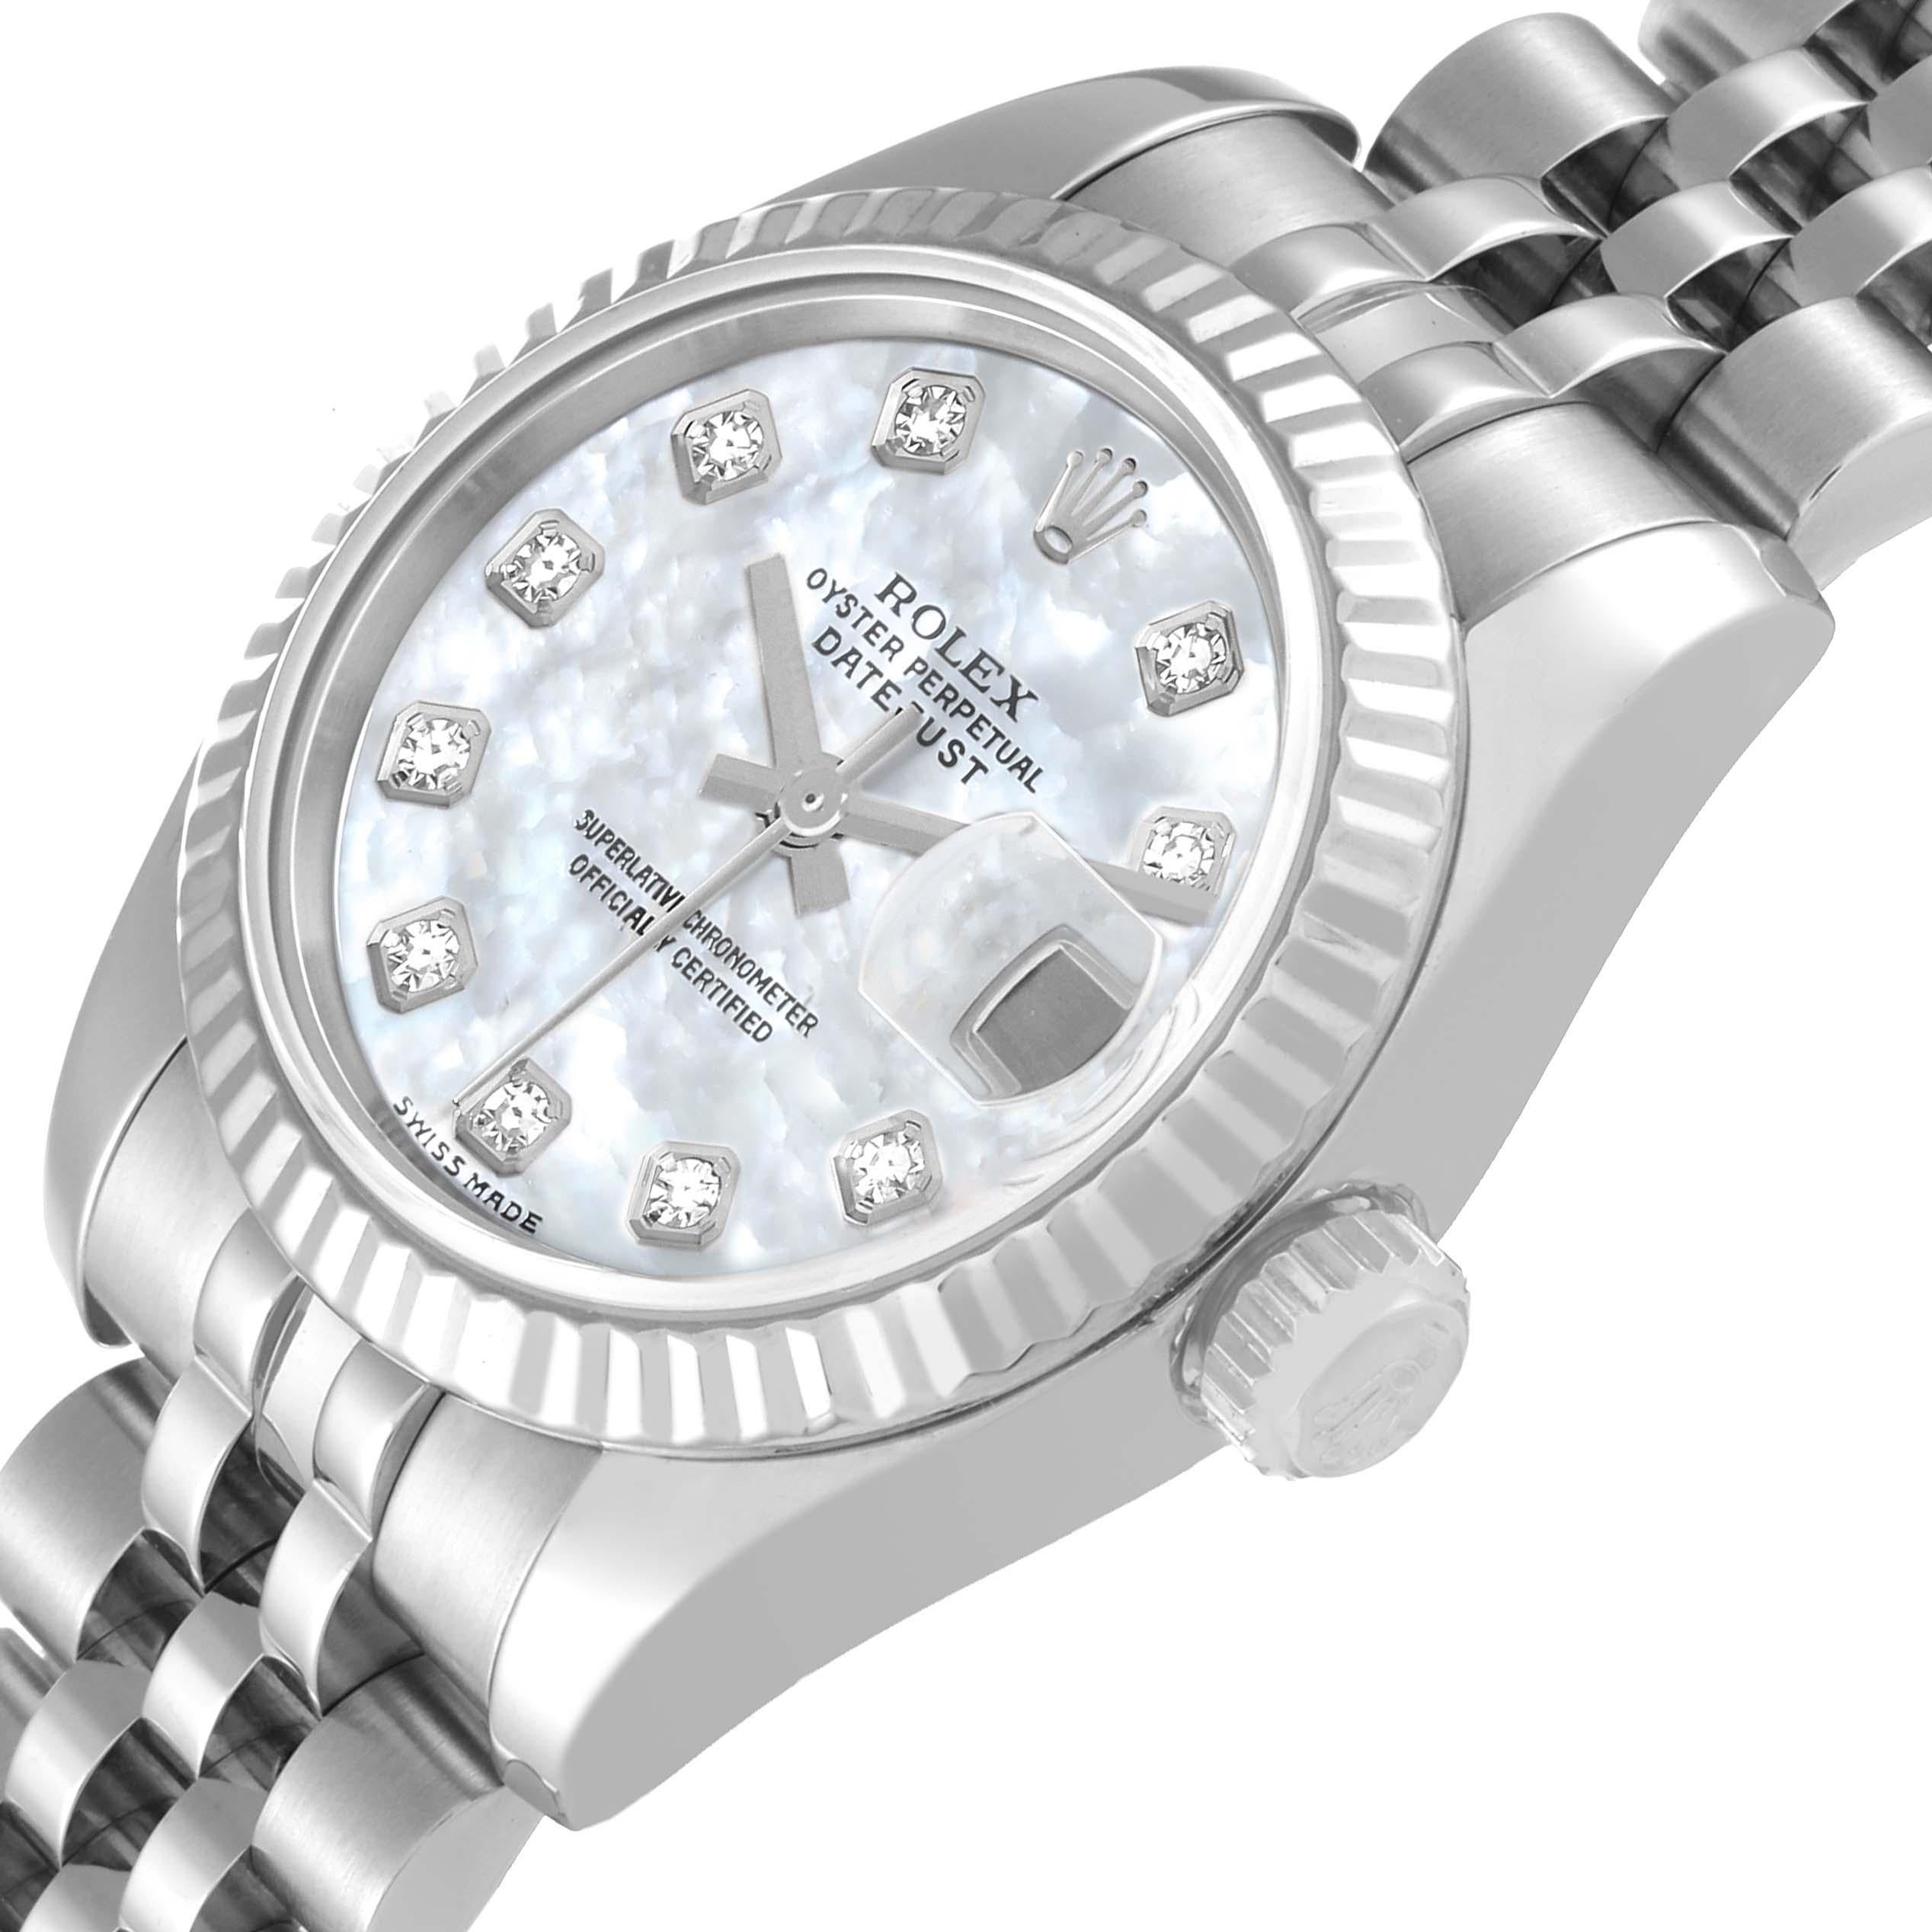 Rolex Datejust Steel White Gold MOP Diamond Dial Ladies Watch 179174 1